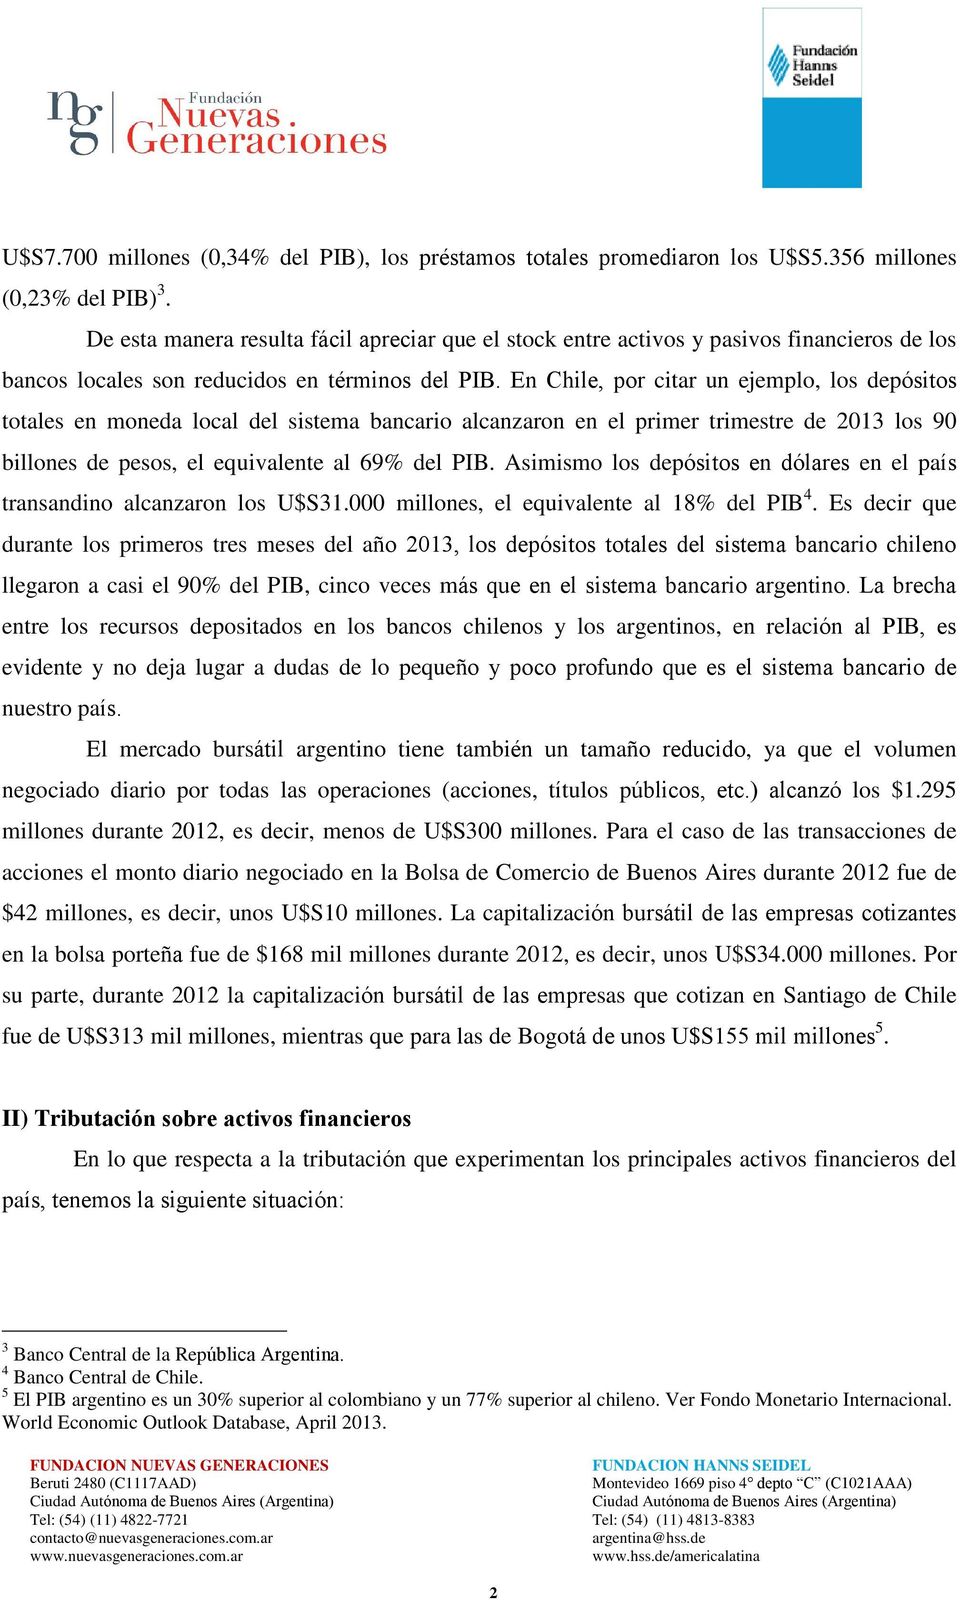 En Chile, por citar un ejemplo, los depósitos totales en moneda local del sistema bancario alcanzaron en el primer trimestre de 2013 los 90 billones de pesos, el equivalente al 69% del PIB.